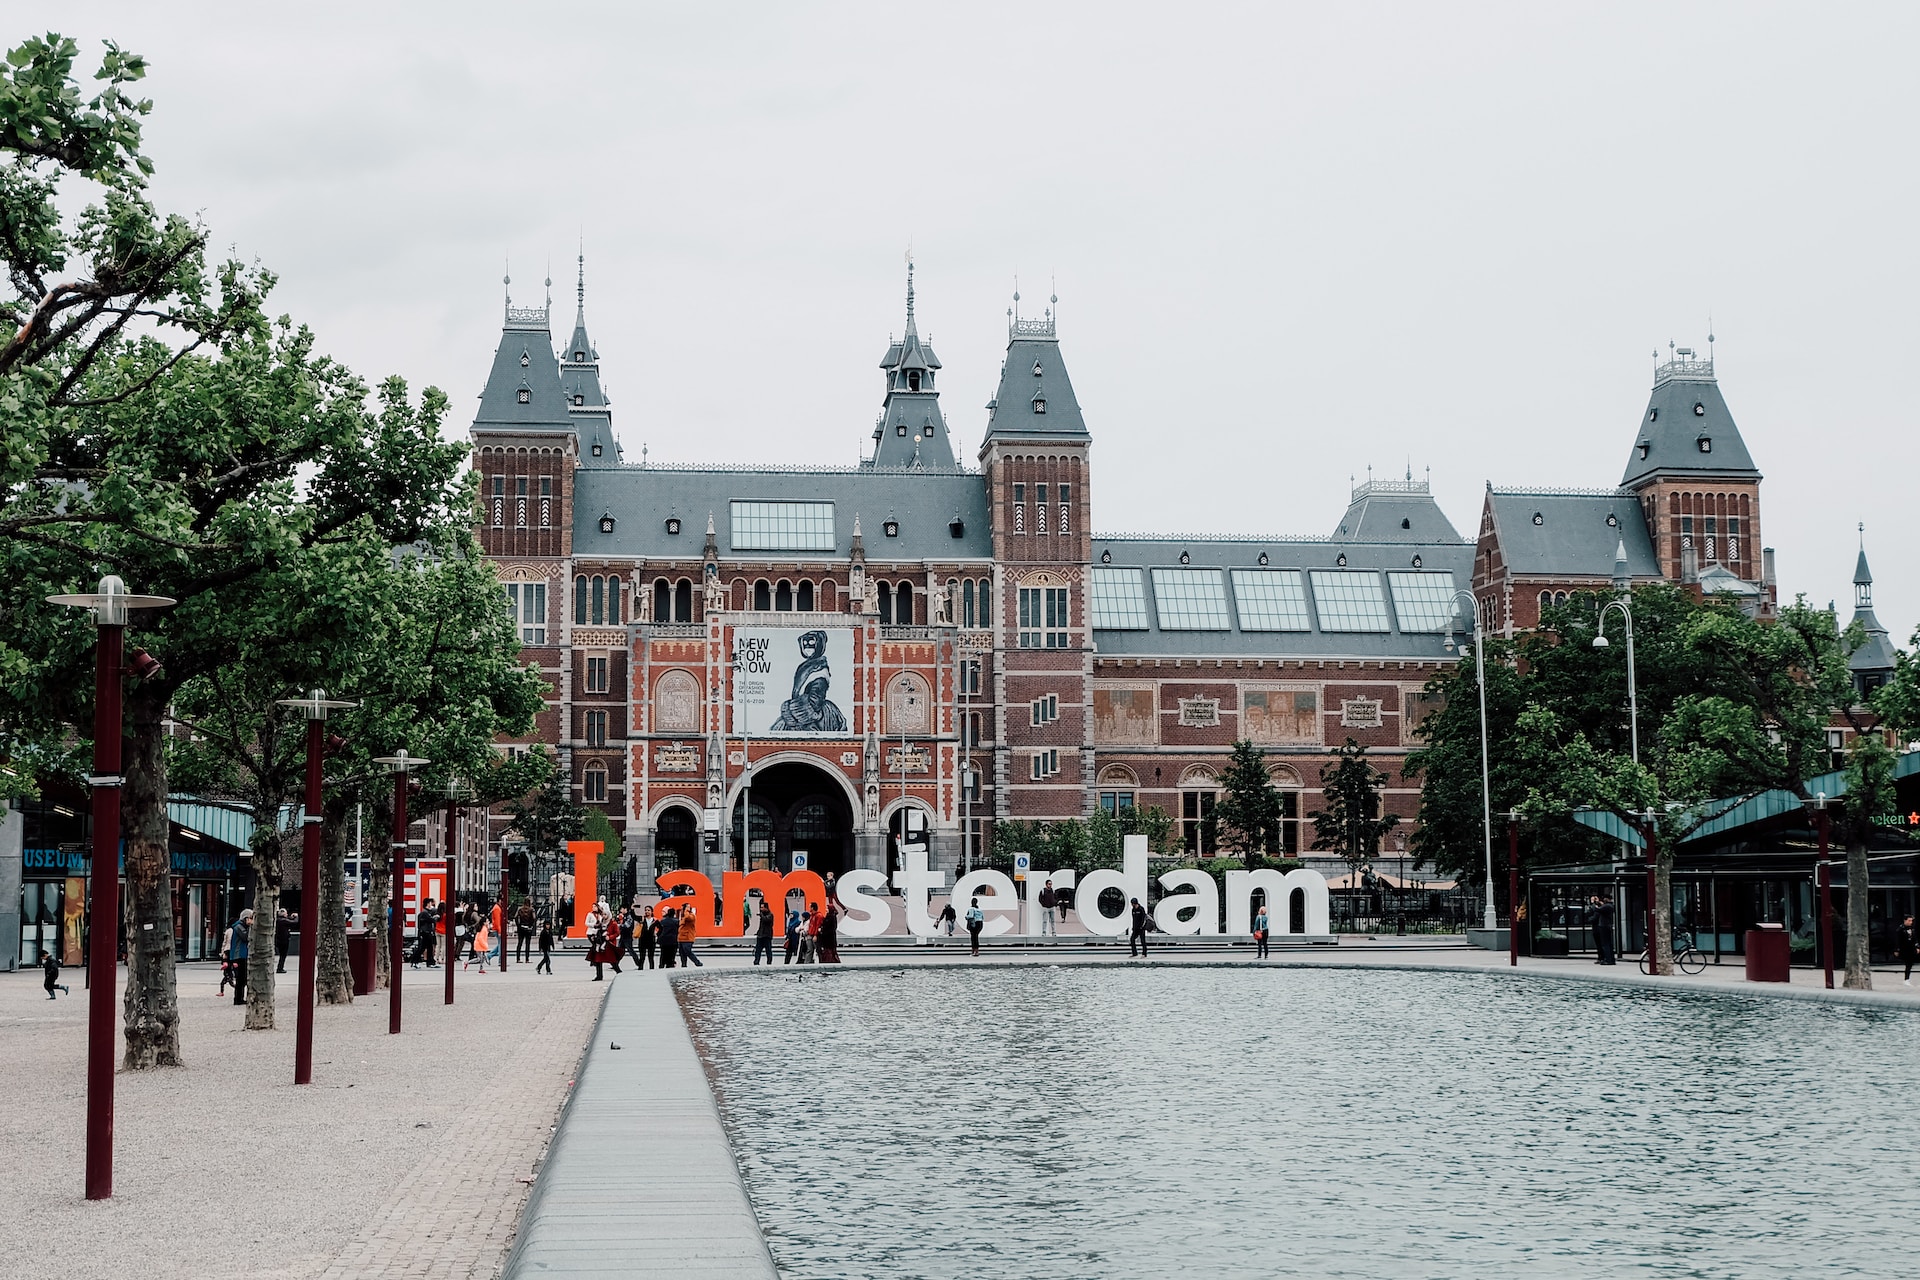 Migliori musei ad Amsterdam